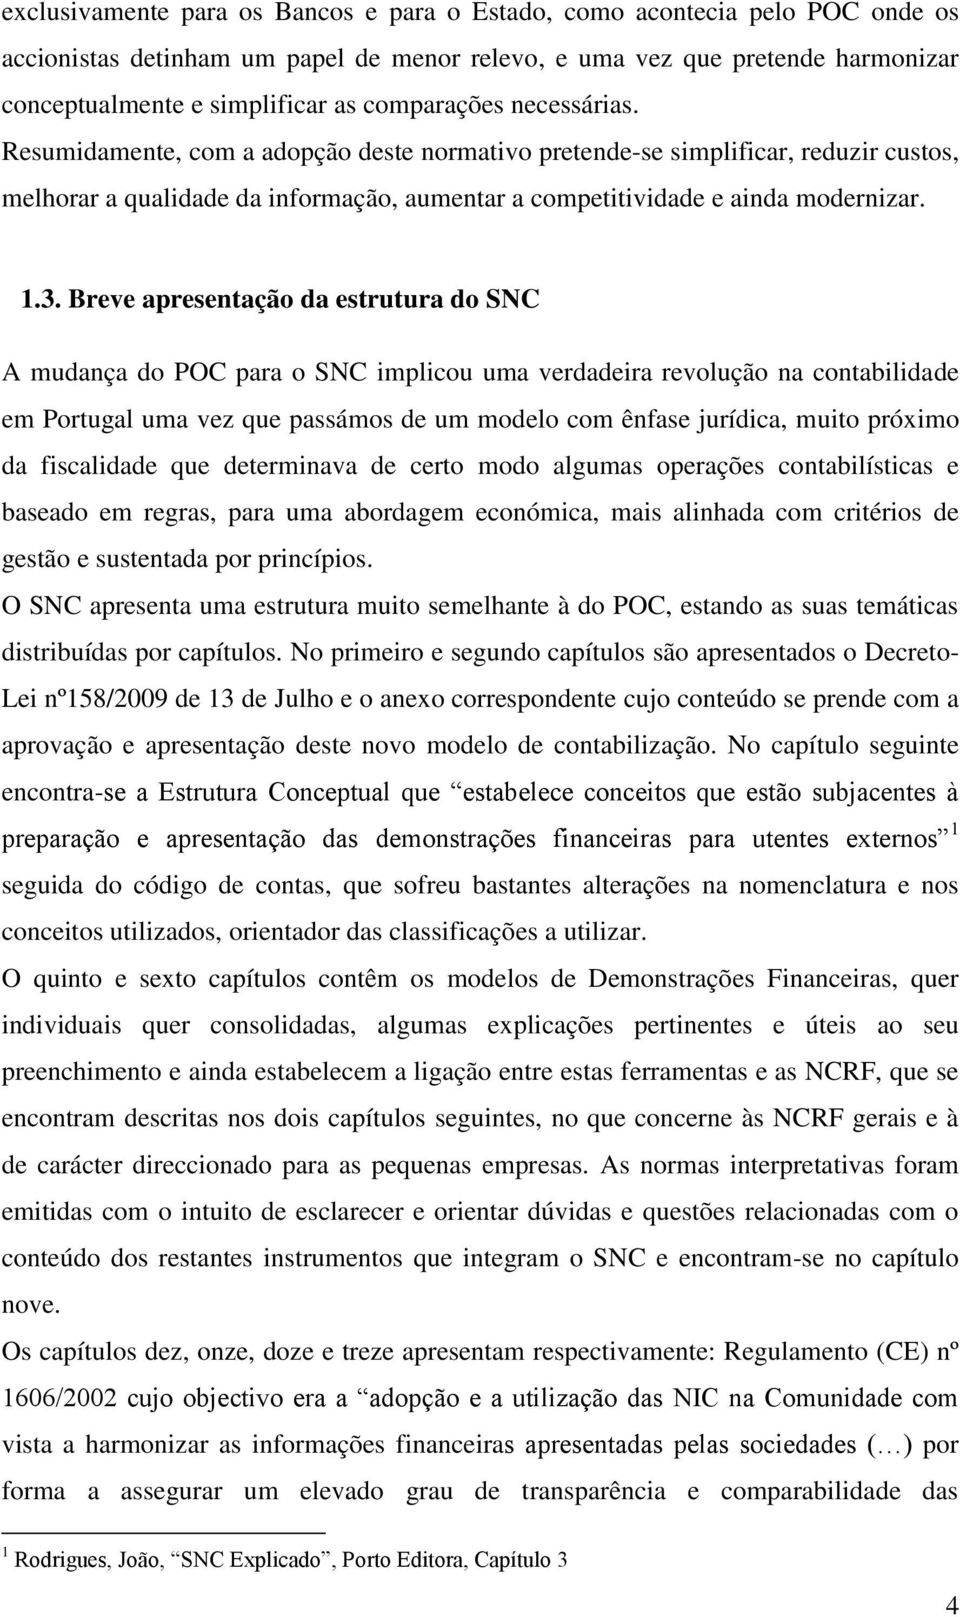 Breve apresentação da estrutura do SNC A mudança do POC para o SNC implicou uma verdadeira revolução na contabilidade em Portugal uma vez que passámos de um modelo com ênfase jurídica, muito próximo